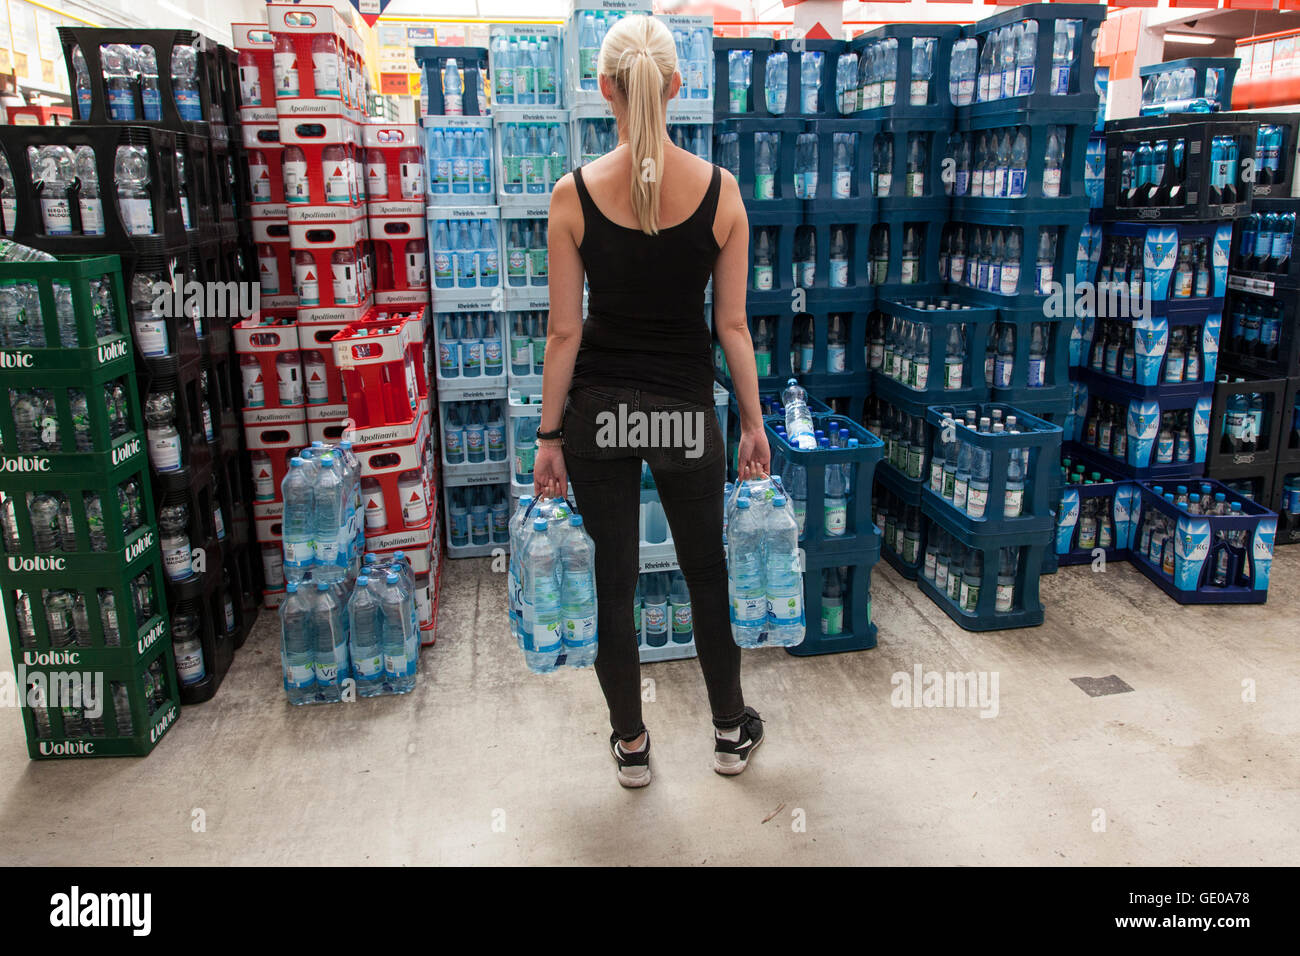 Плохая минеральная вода. Водные спортивные товары. Минеральная вода в 2016 году бутылка. Роскачество картинки. Фото ящика минералки на улице.